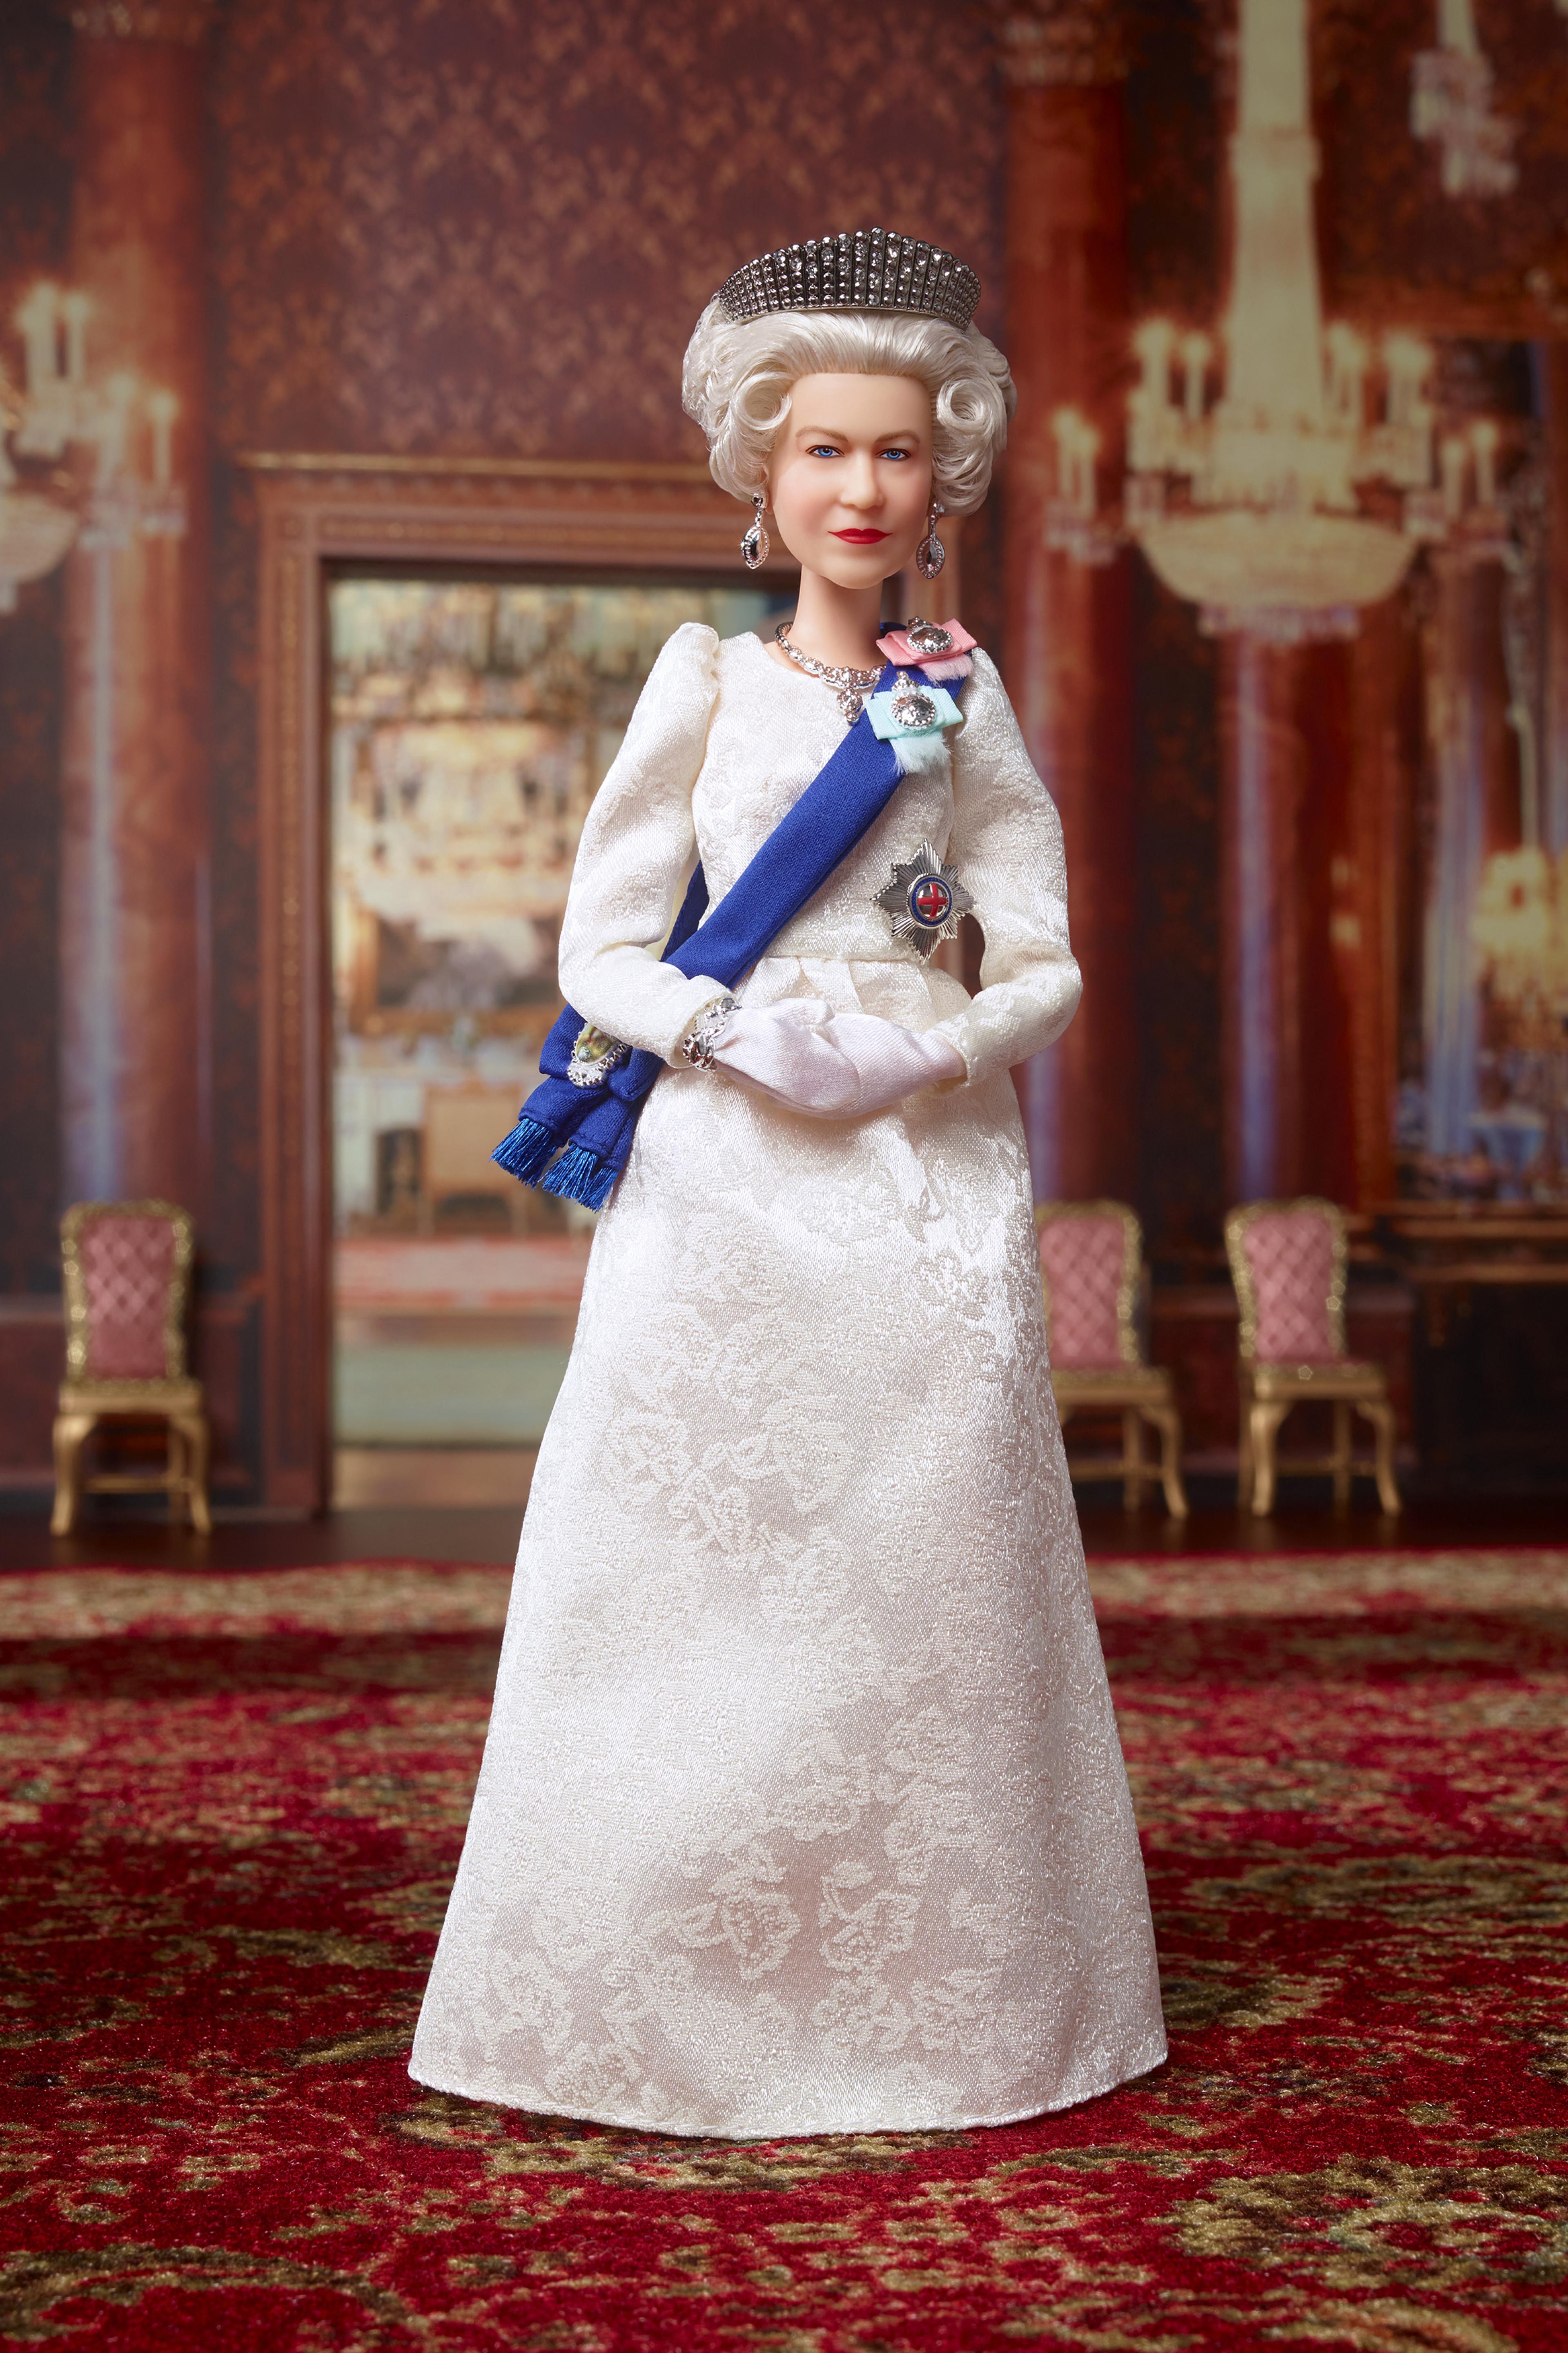 Lass die Puppen tanzen: Zum Platin-Jubiläum bekam Queen Elizabeth II. ihre eigene Barbie